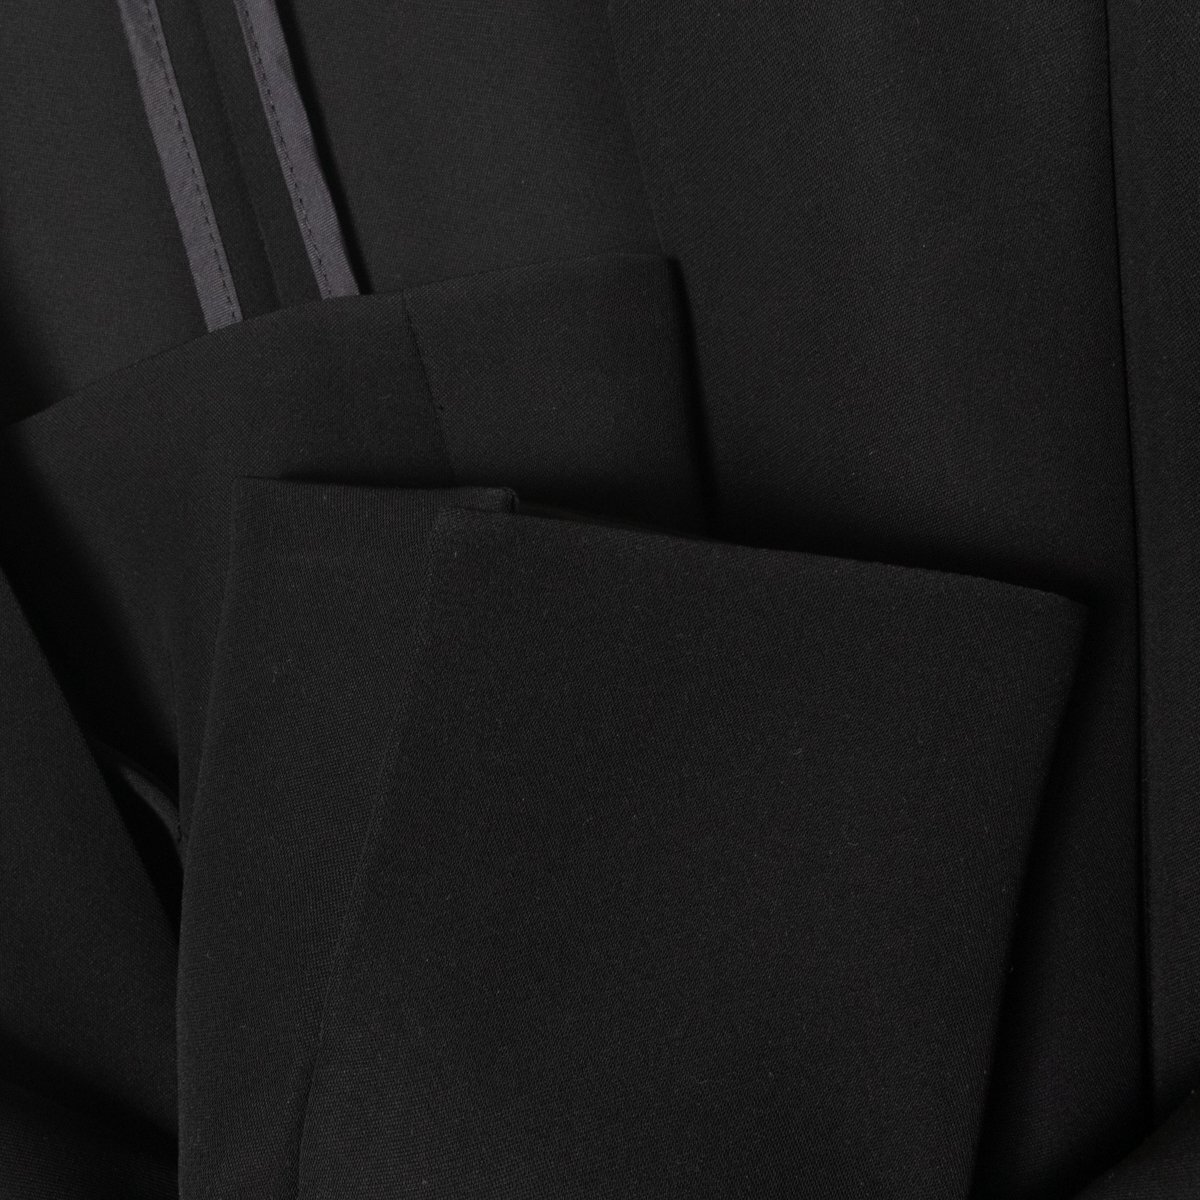 PINKY&DIANNE ピンキーアンドダイアン ノーカラージャケット 羽織 無地 36 ポリエステル100% ブラック 黒 綺麗め カジュアル フォーマルの画像5